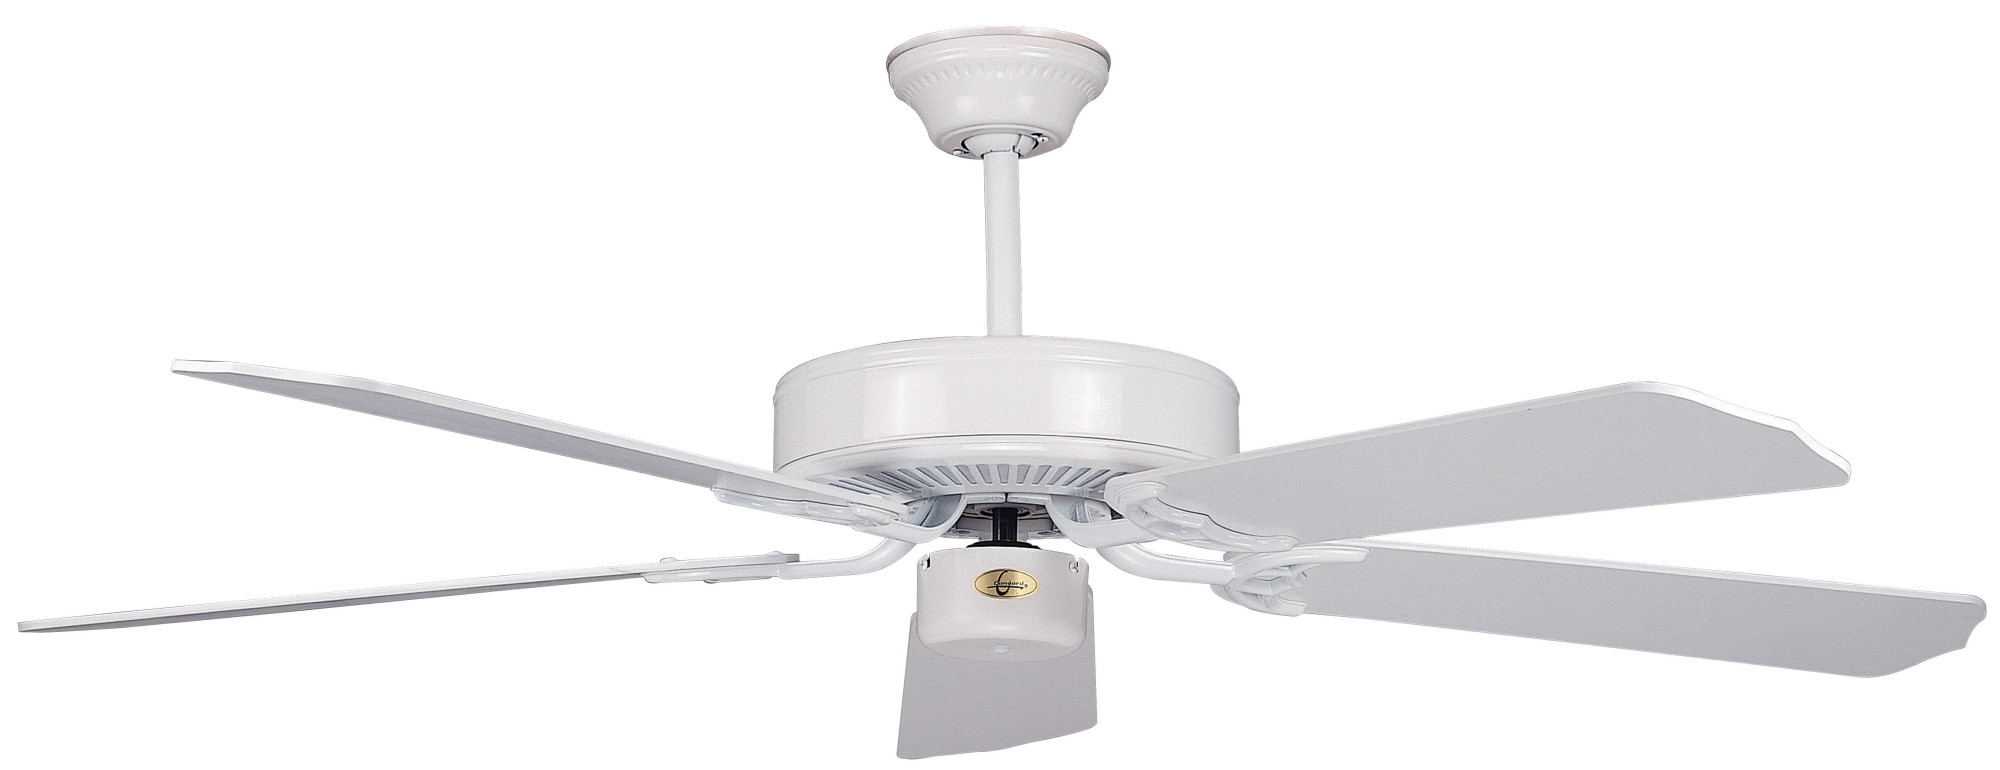 ceiling fan model 5745